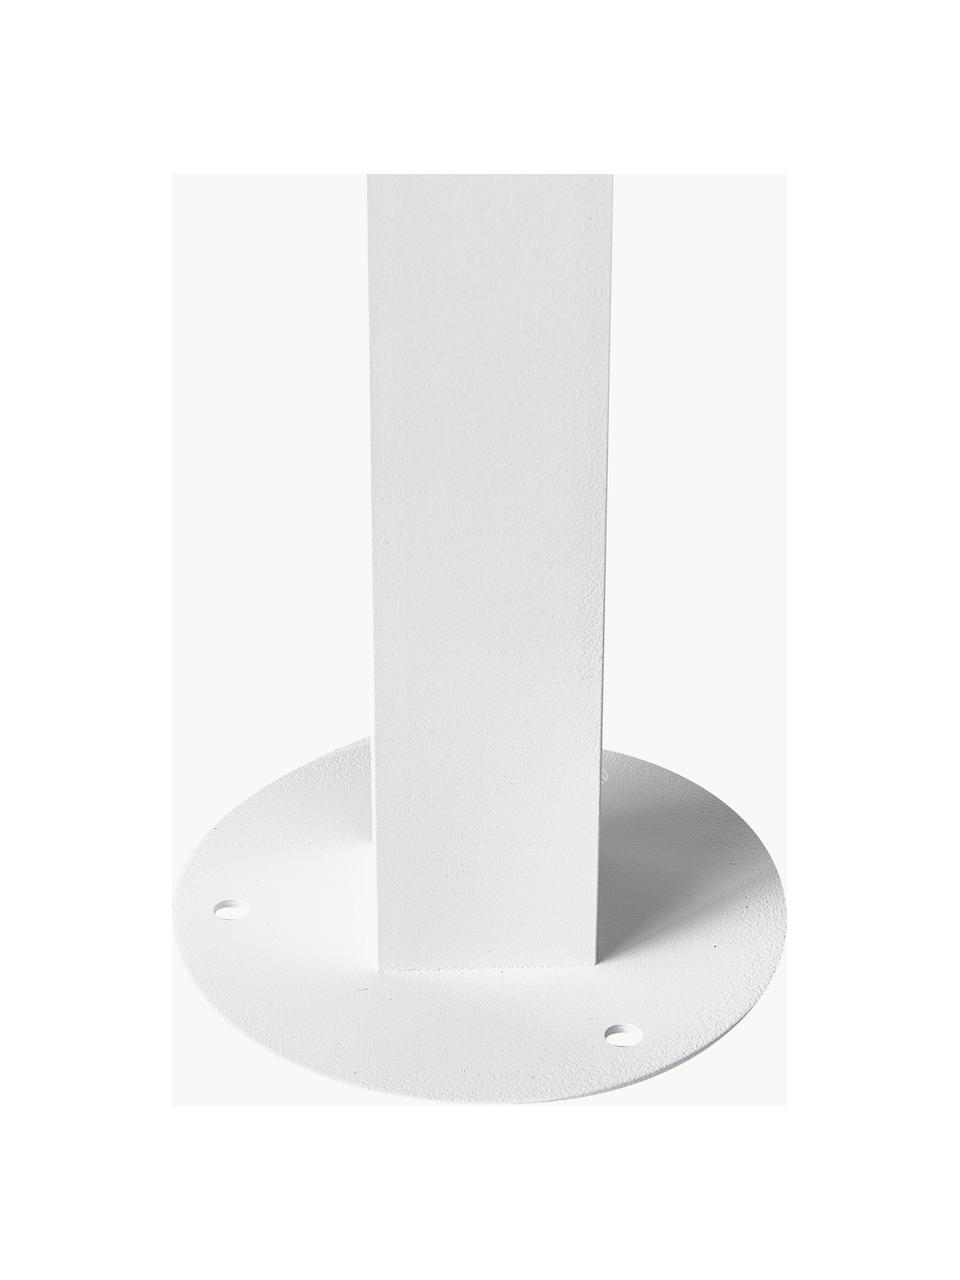 Lampada da terra dimmerabile per esterni Couper, Struttura: alluminio rivestito, Bianco, Ø 14 x Alt. 80 cm